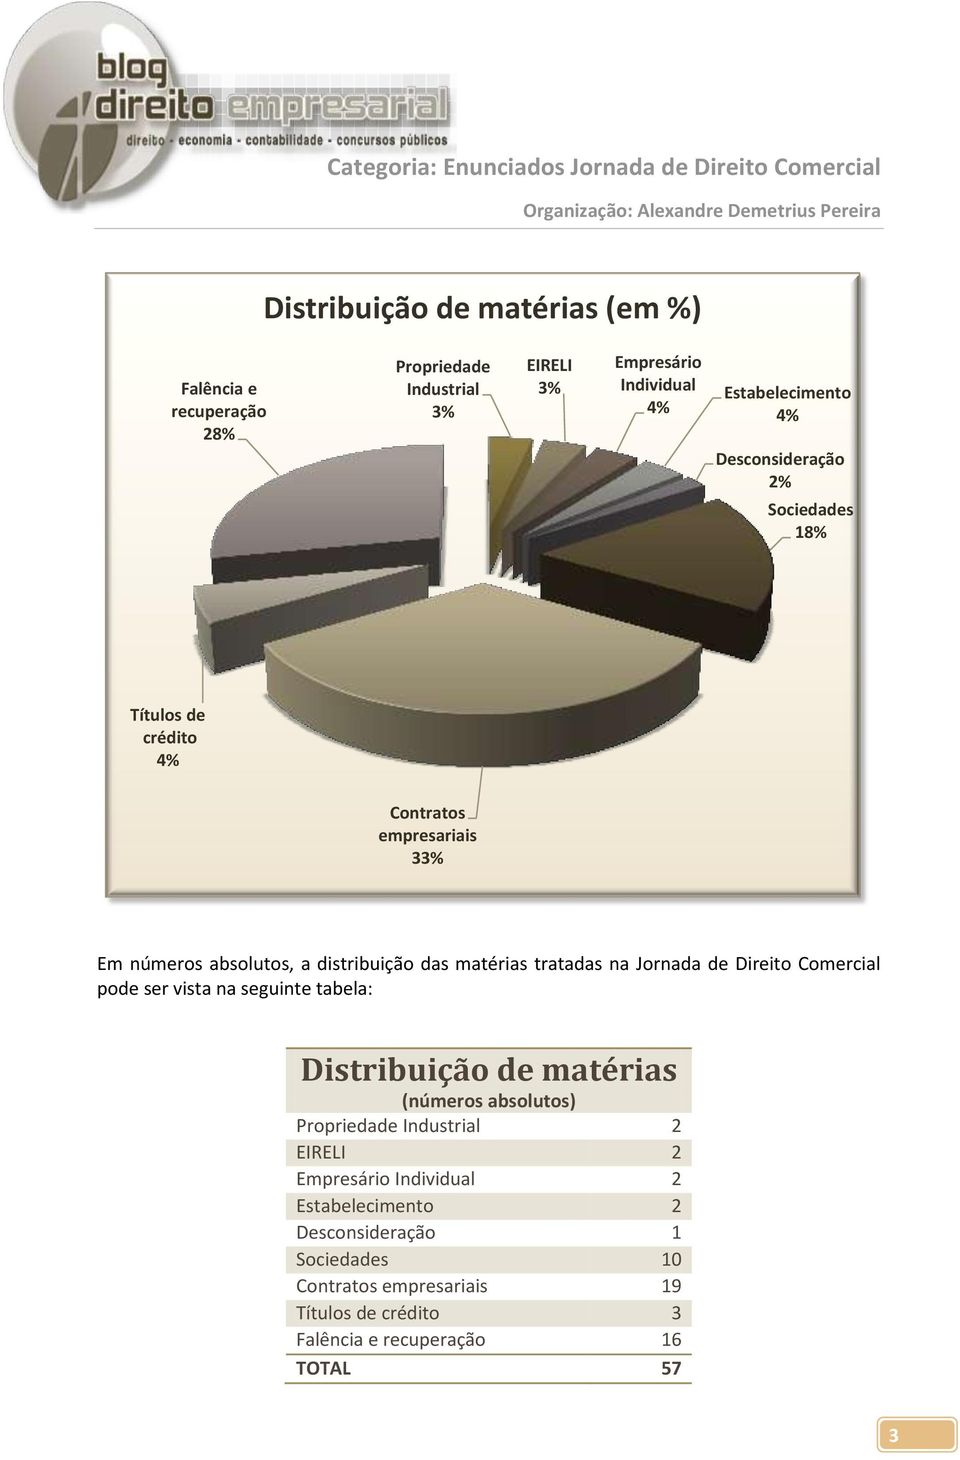 Jornada de Direito Comercial pode ser vista na seguinte tabela: Distribuição de matérias (números absolutos) Propriedade Industrial 2 EIRELI 2